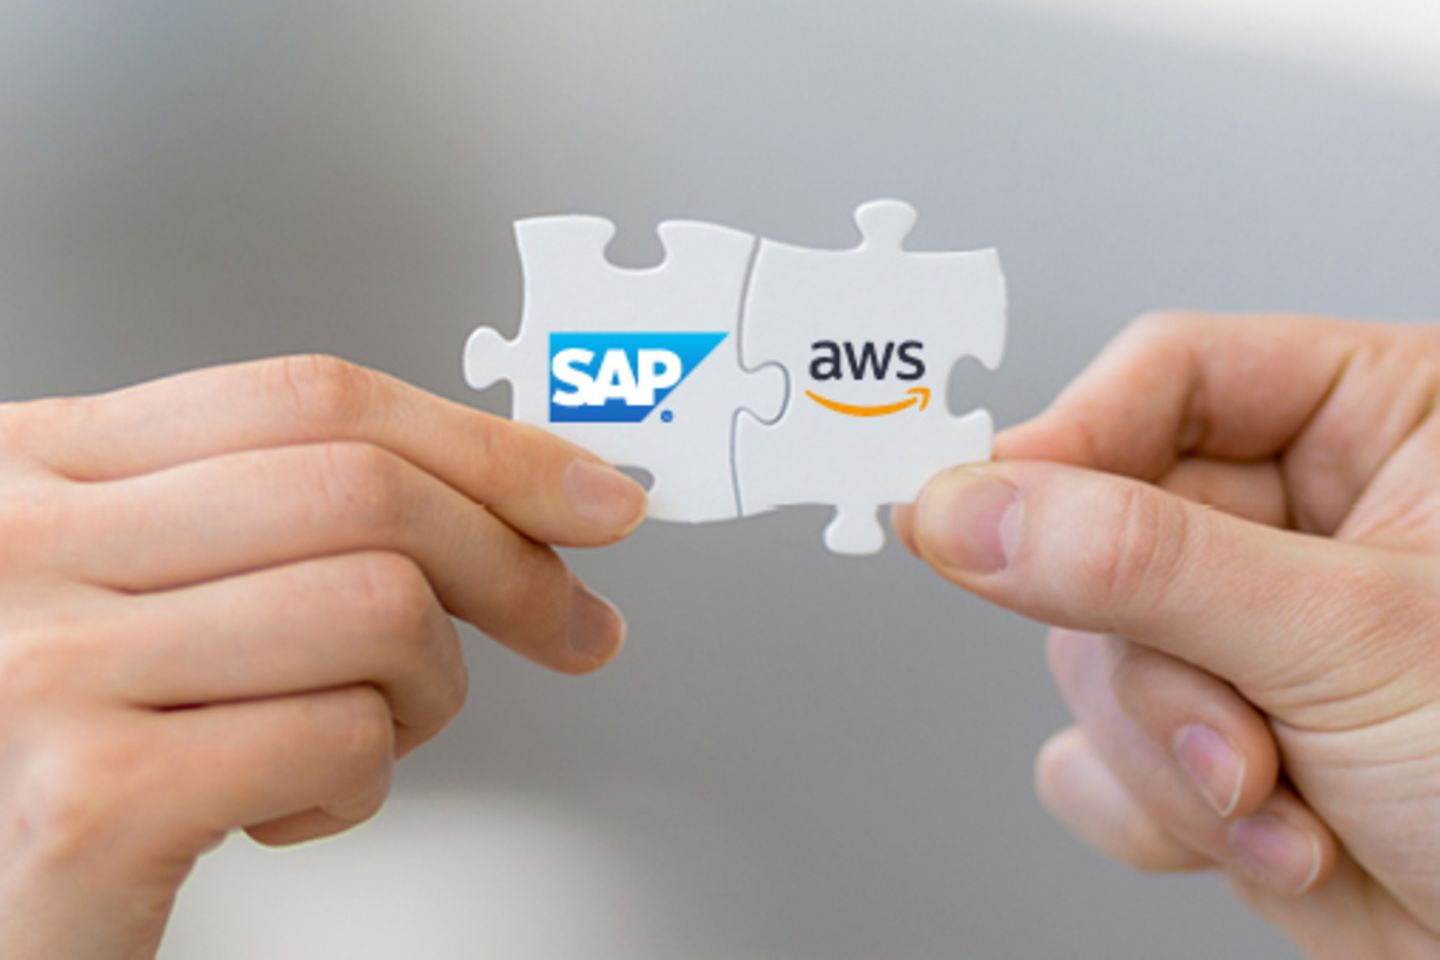 Handen houden puzzelstukjes vast met SAP- en AWS-logo's die bij elkaar passen.